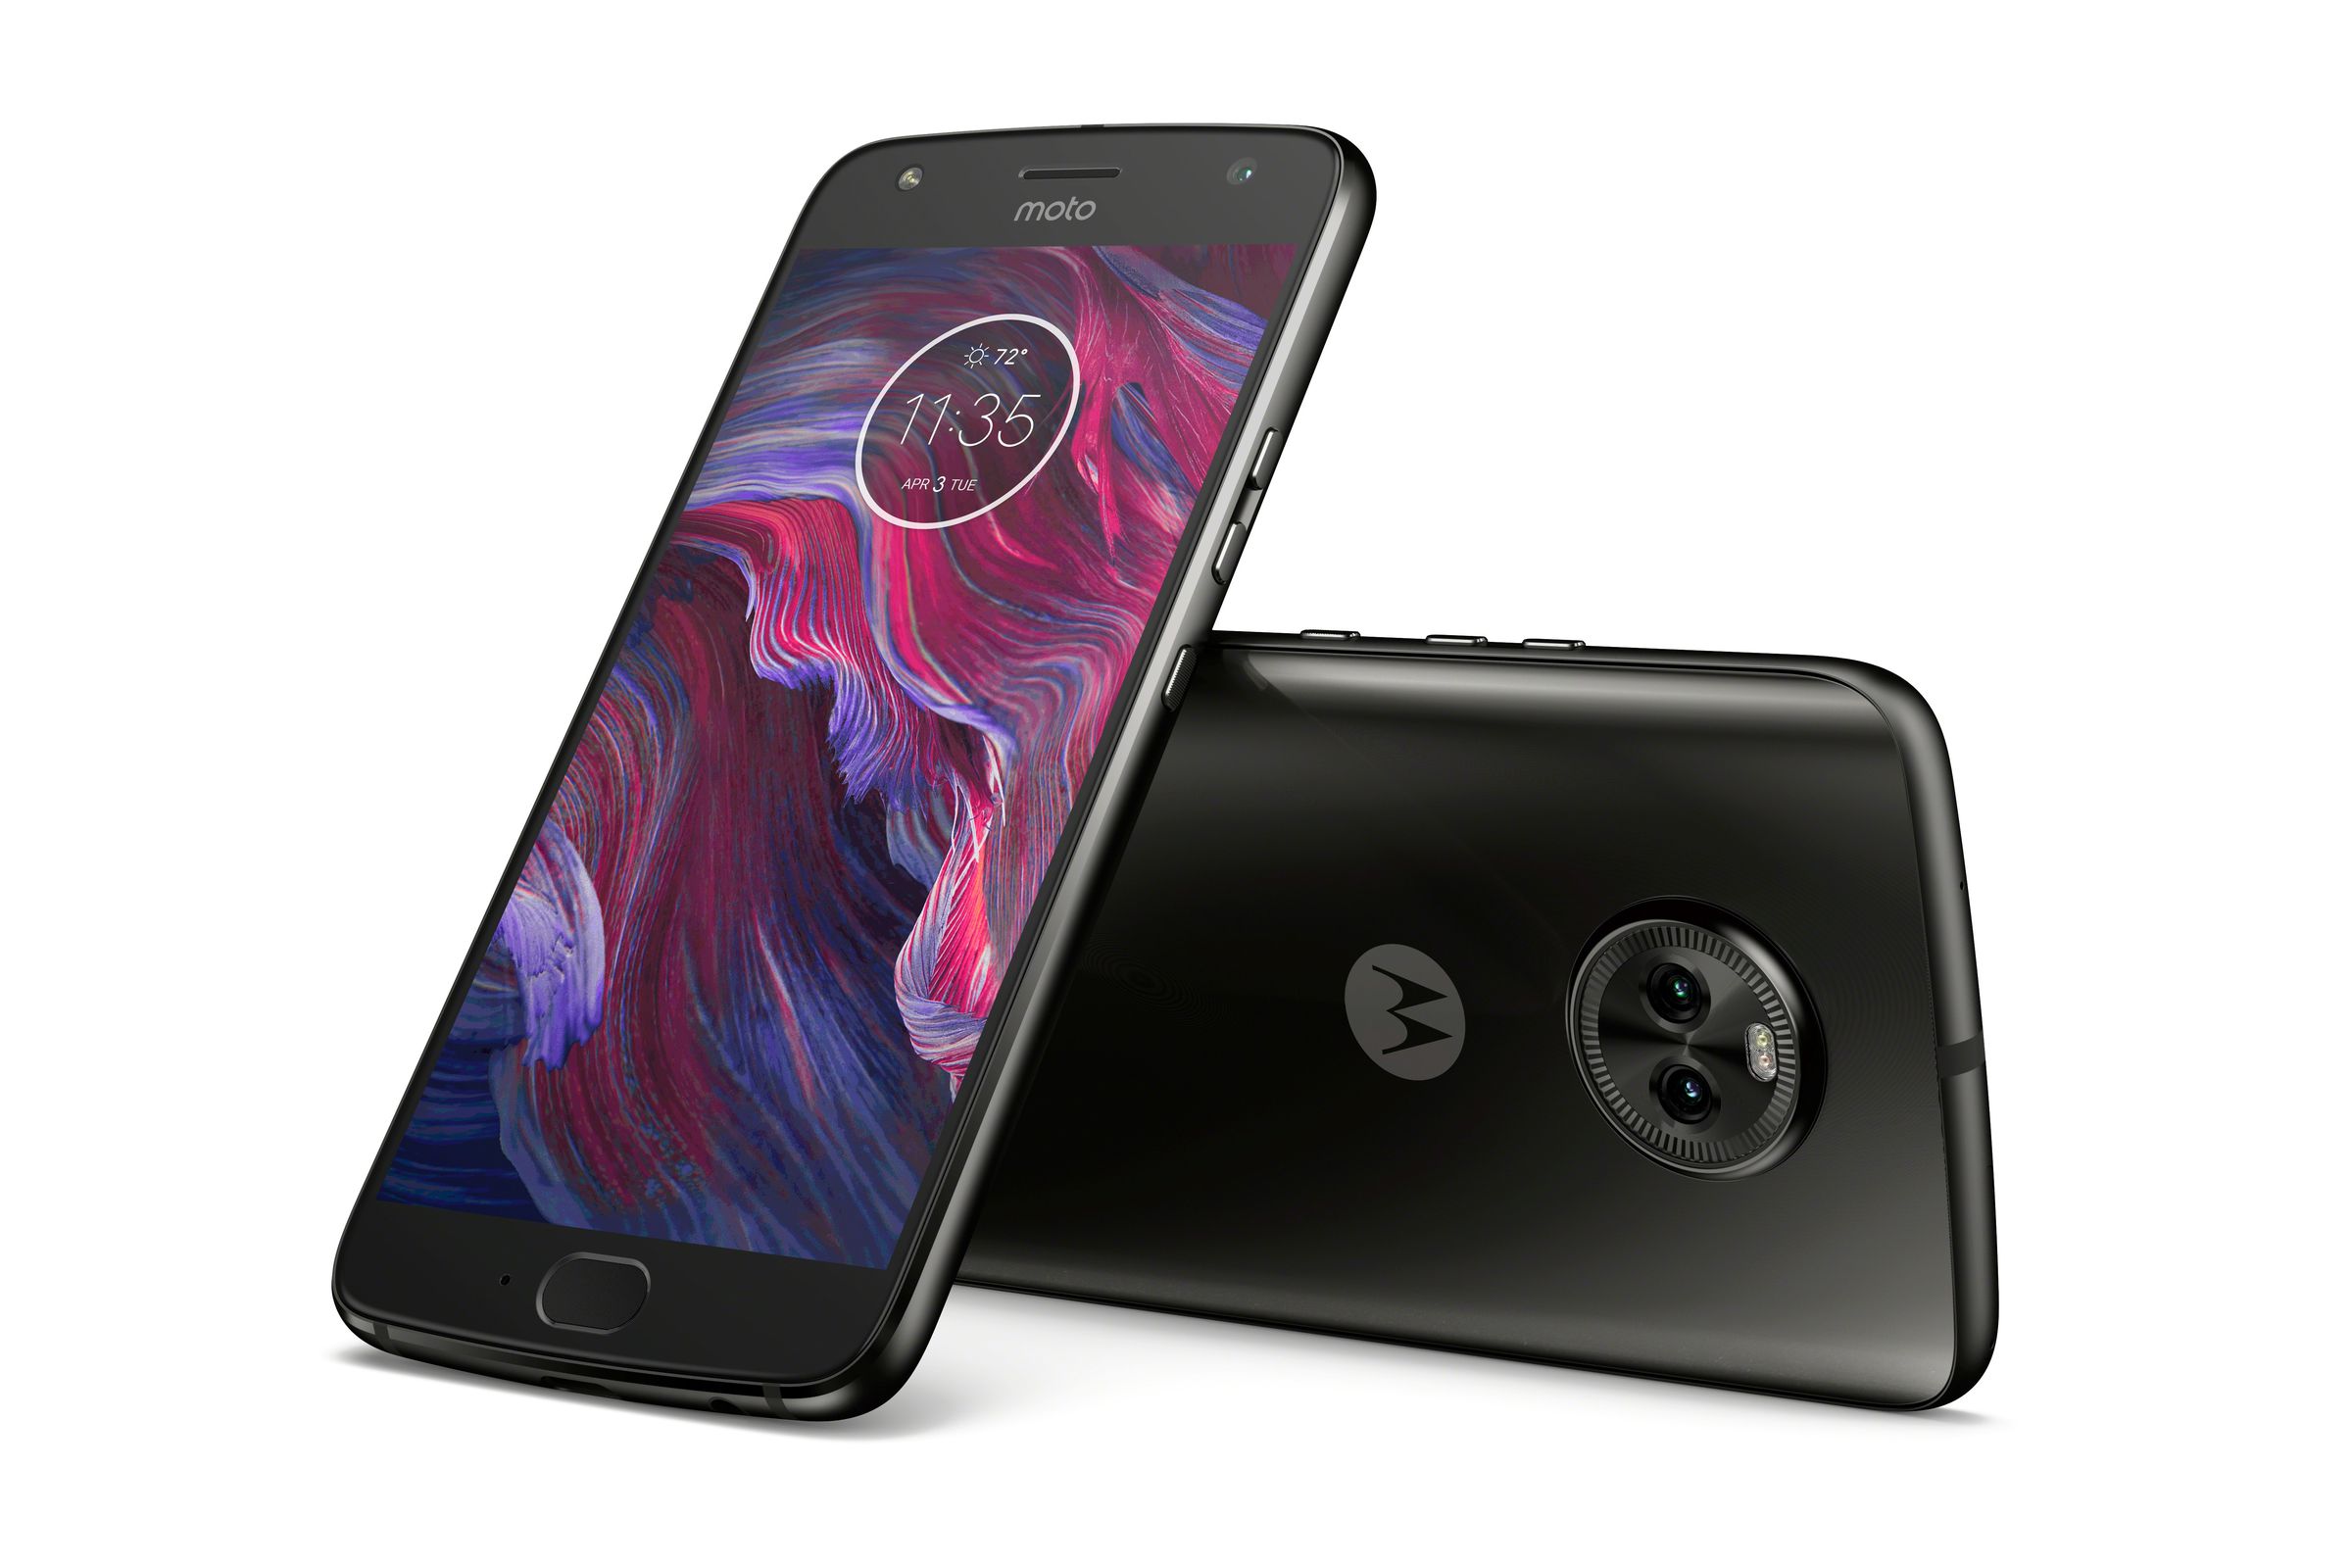 Motorola’s Moto X4 in black